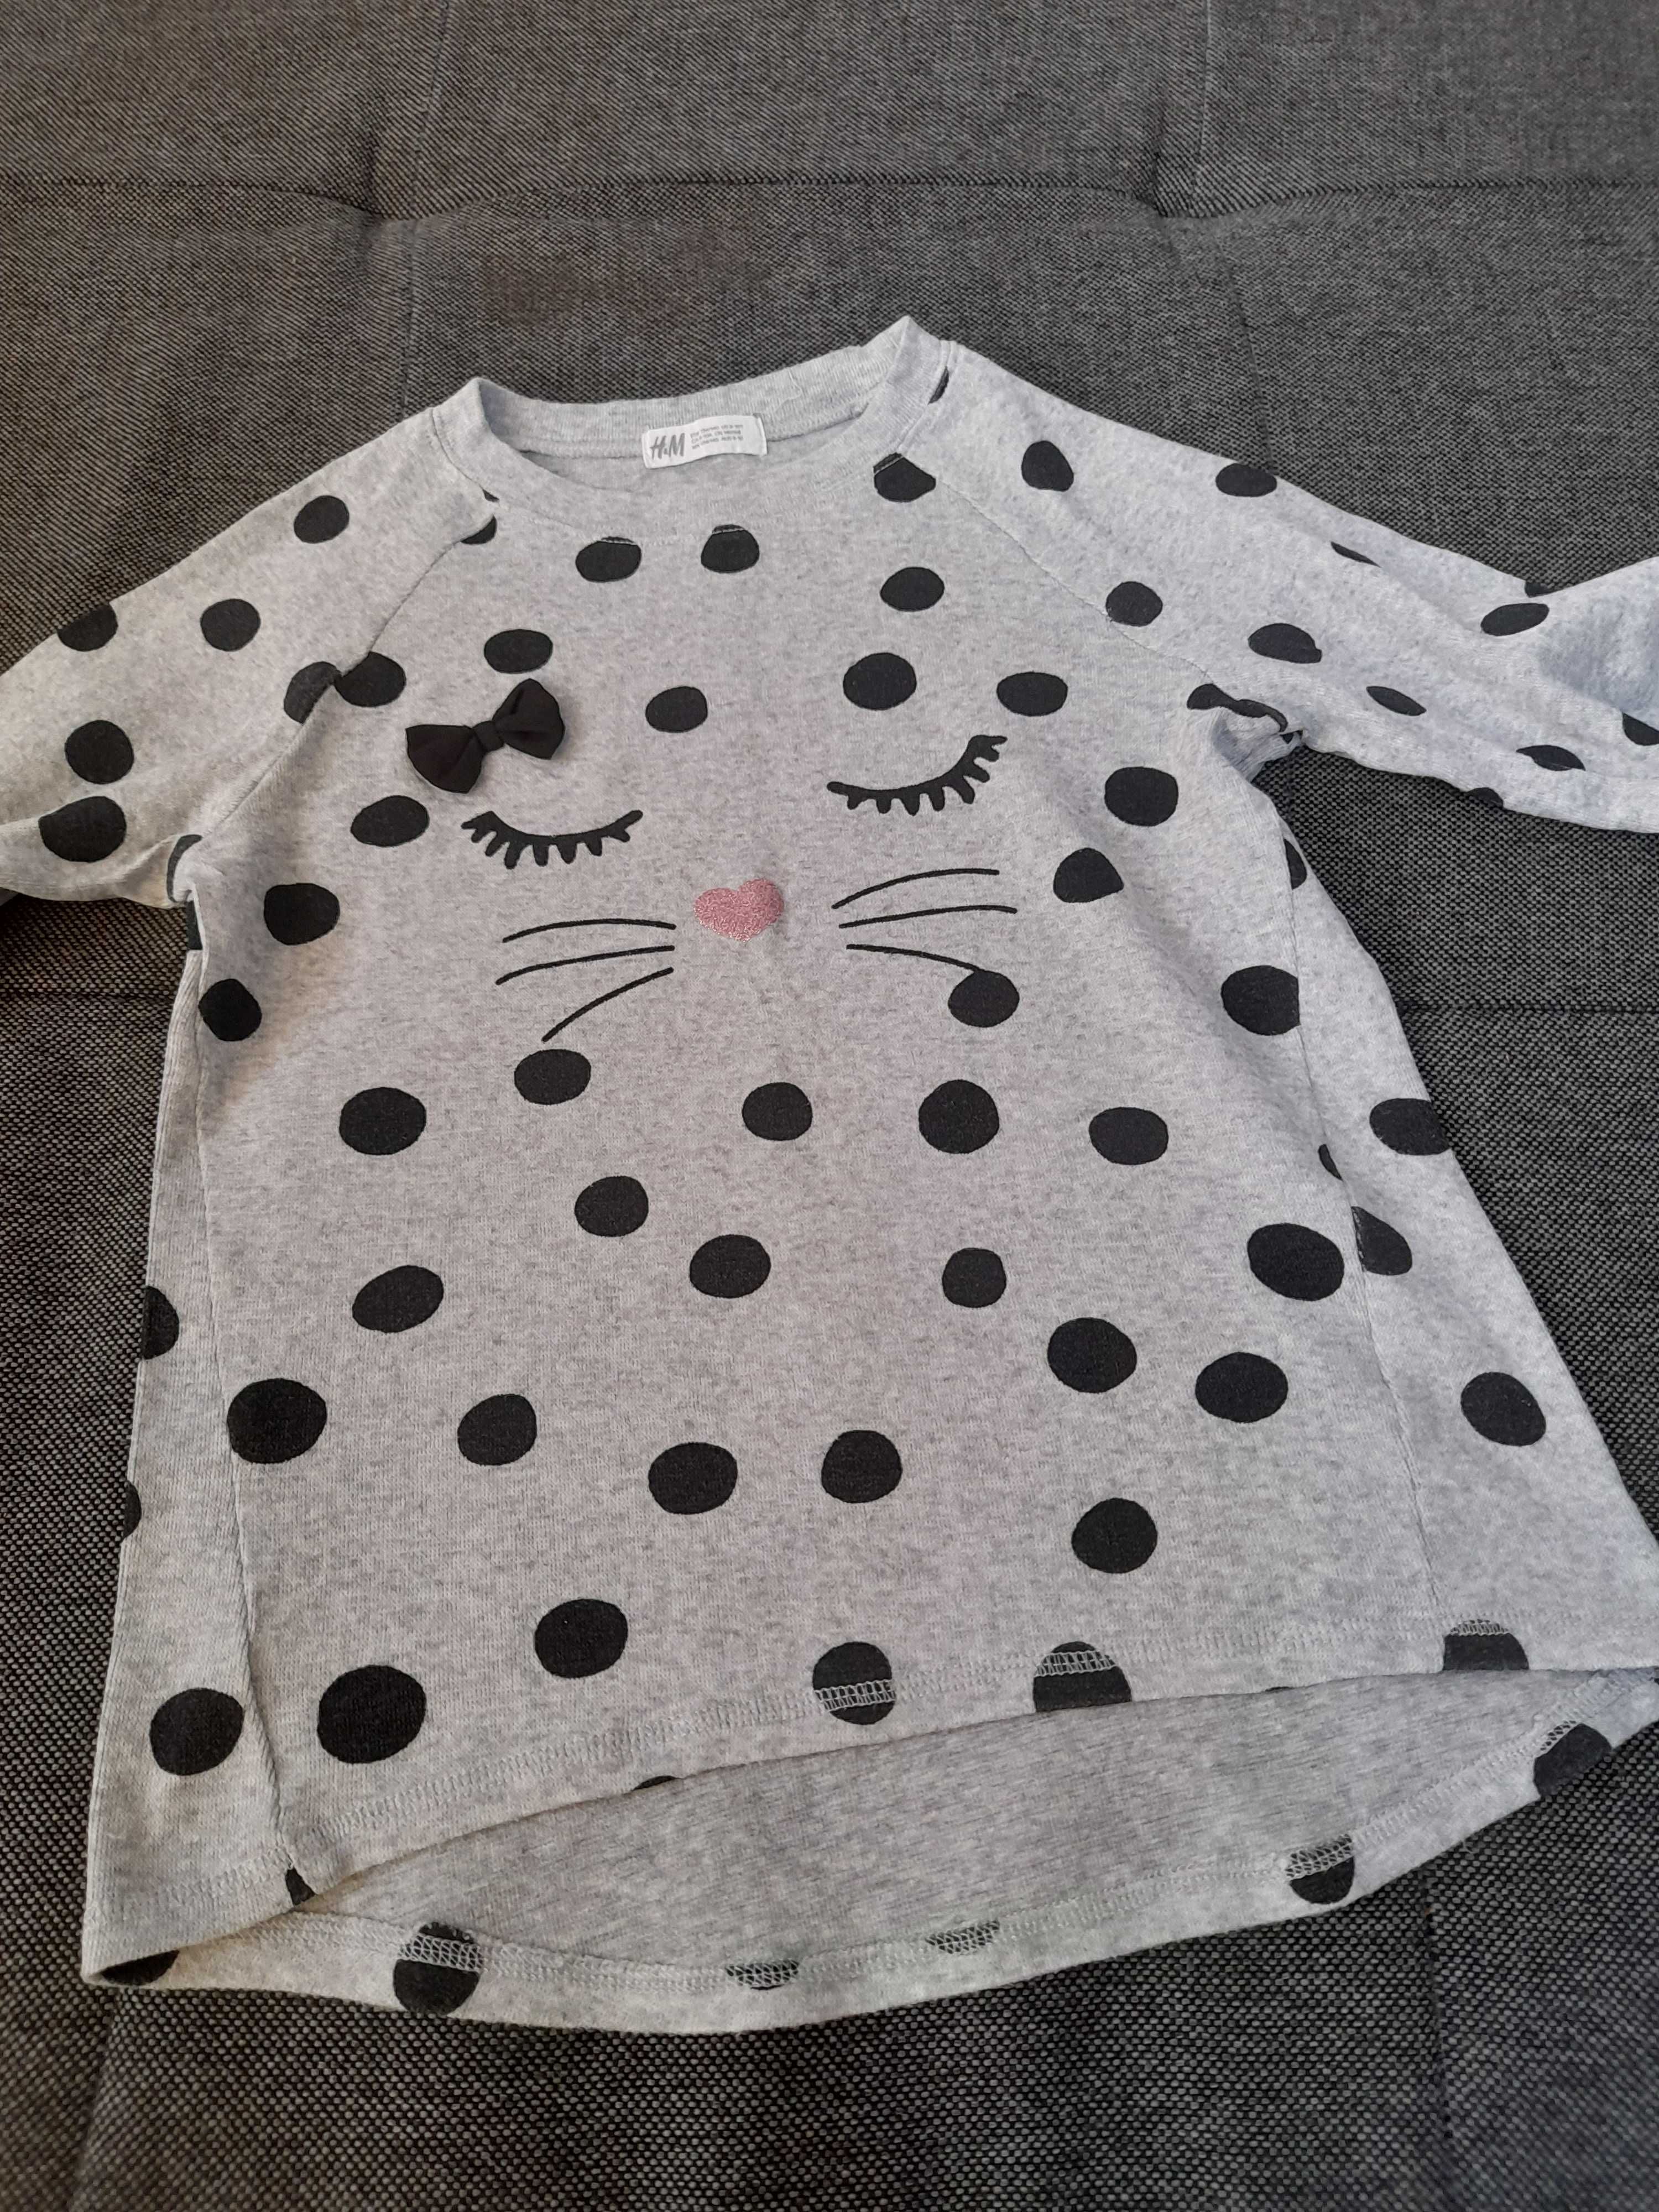 Vand bluza fetita H^M mas.134/140 pentru 8-10 ani/pisicuta/buline